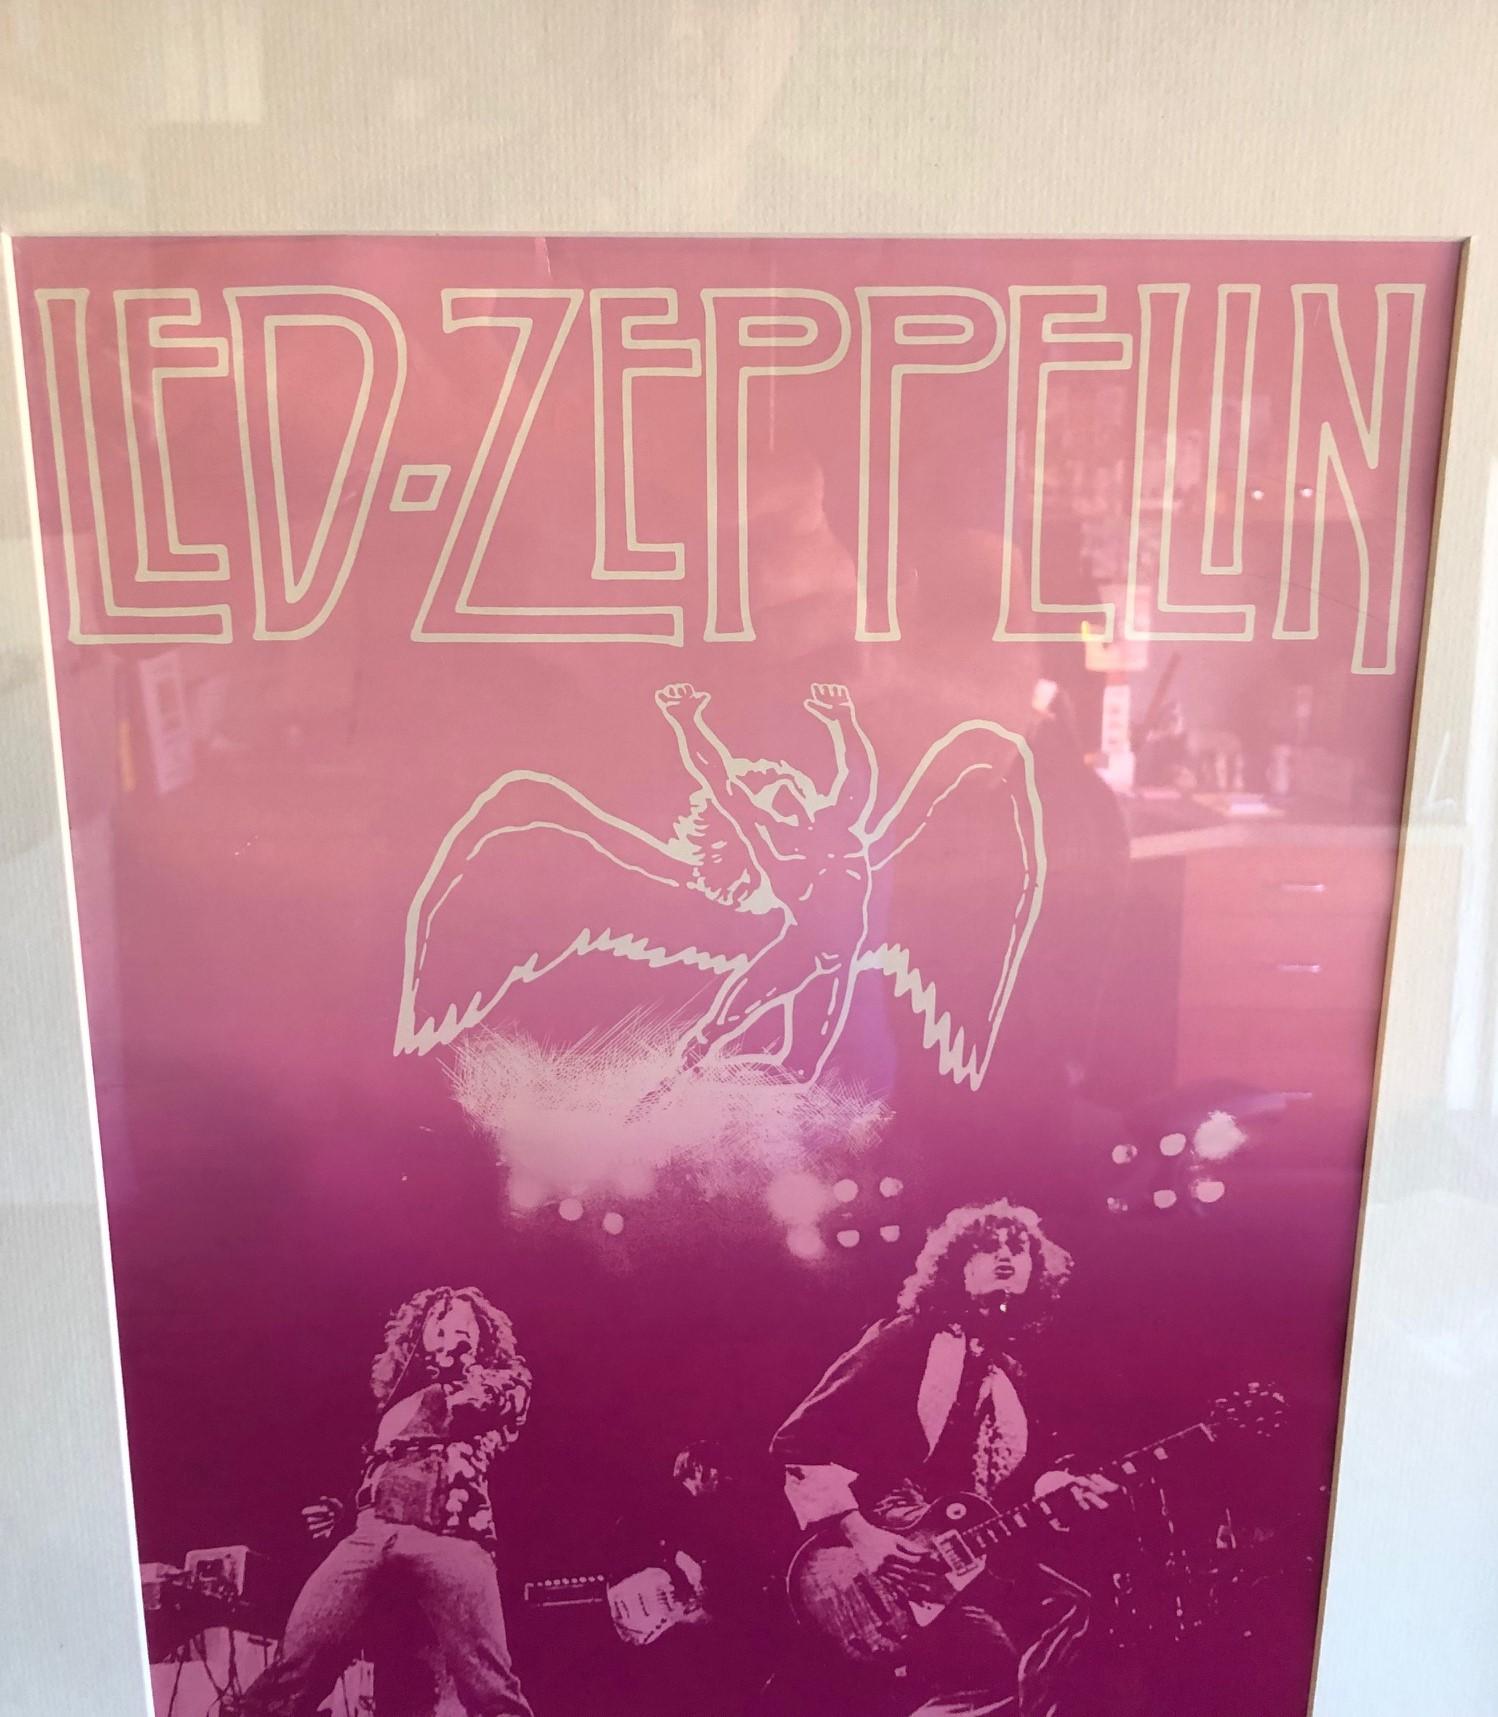 American 1977 Led Zeppelin Vintage Concert Poster Live at Market Square Arena